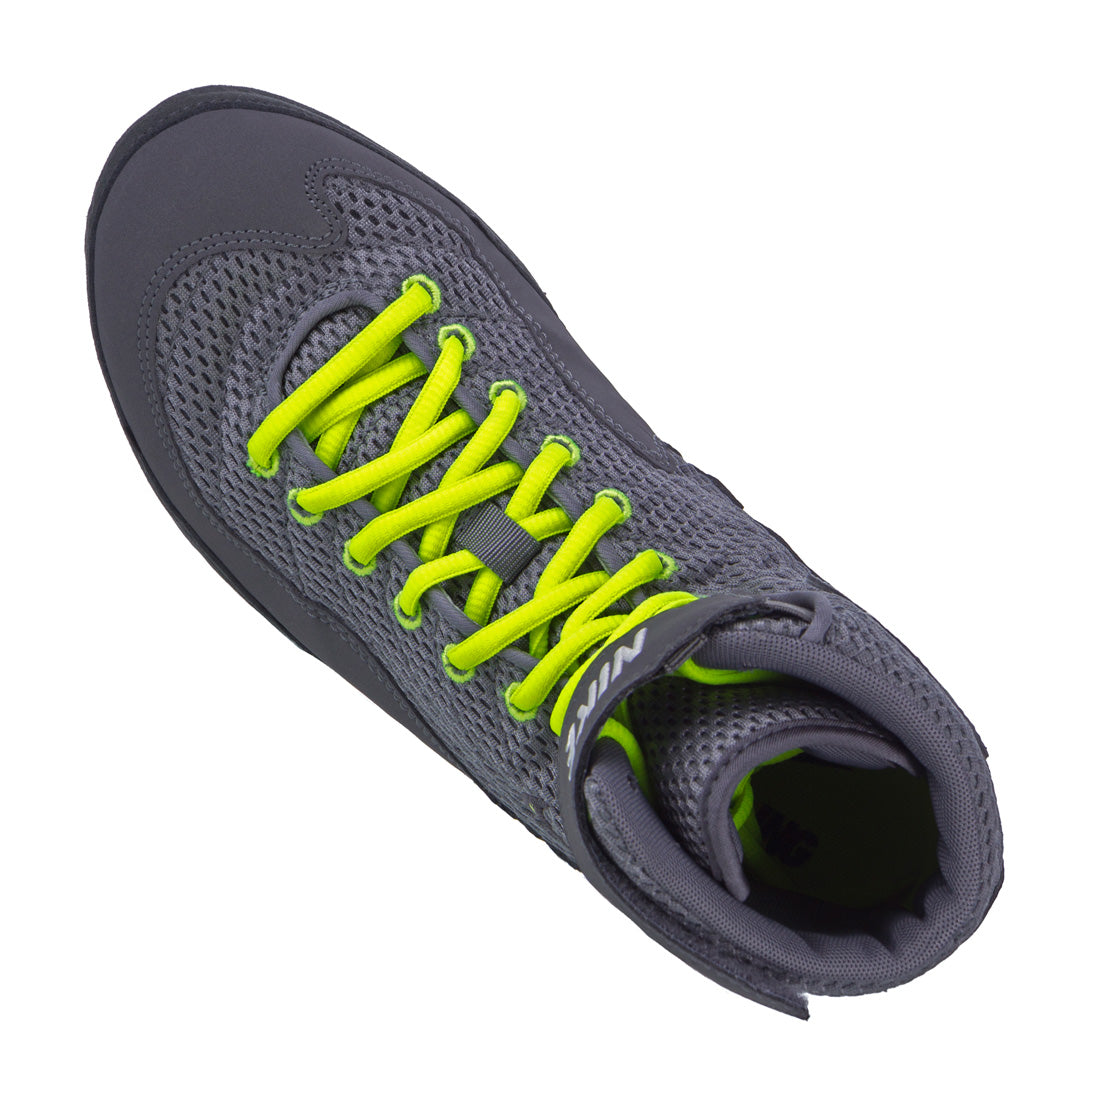 Nike Inflict Wrestling Chaussures - noir/vert fluo, 325256007